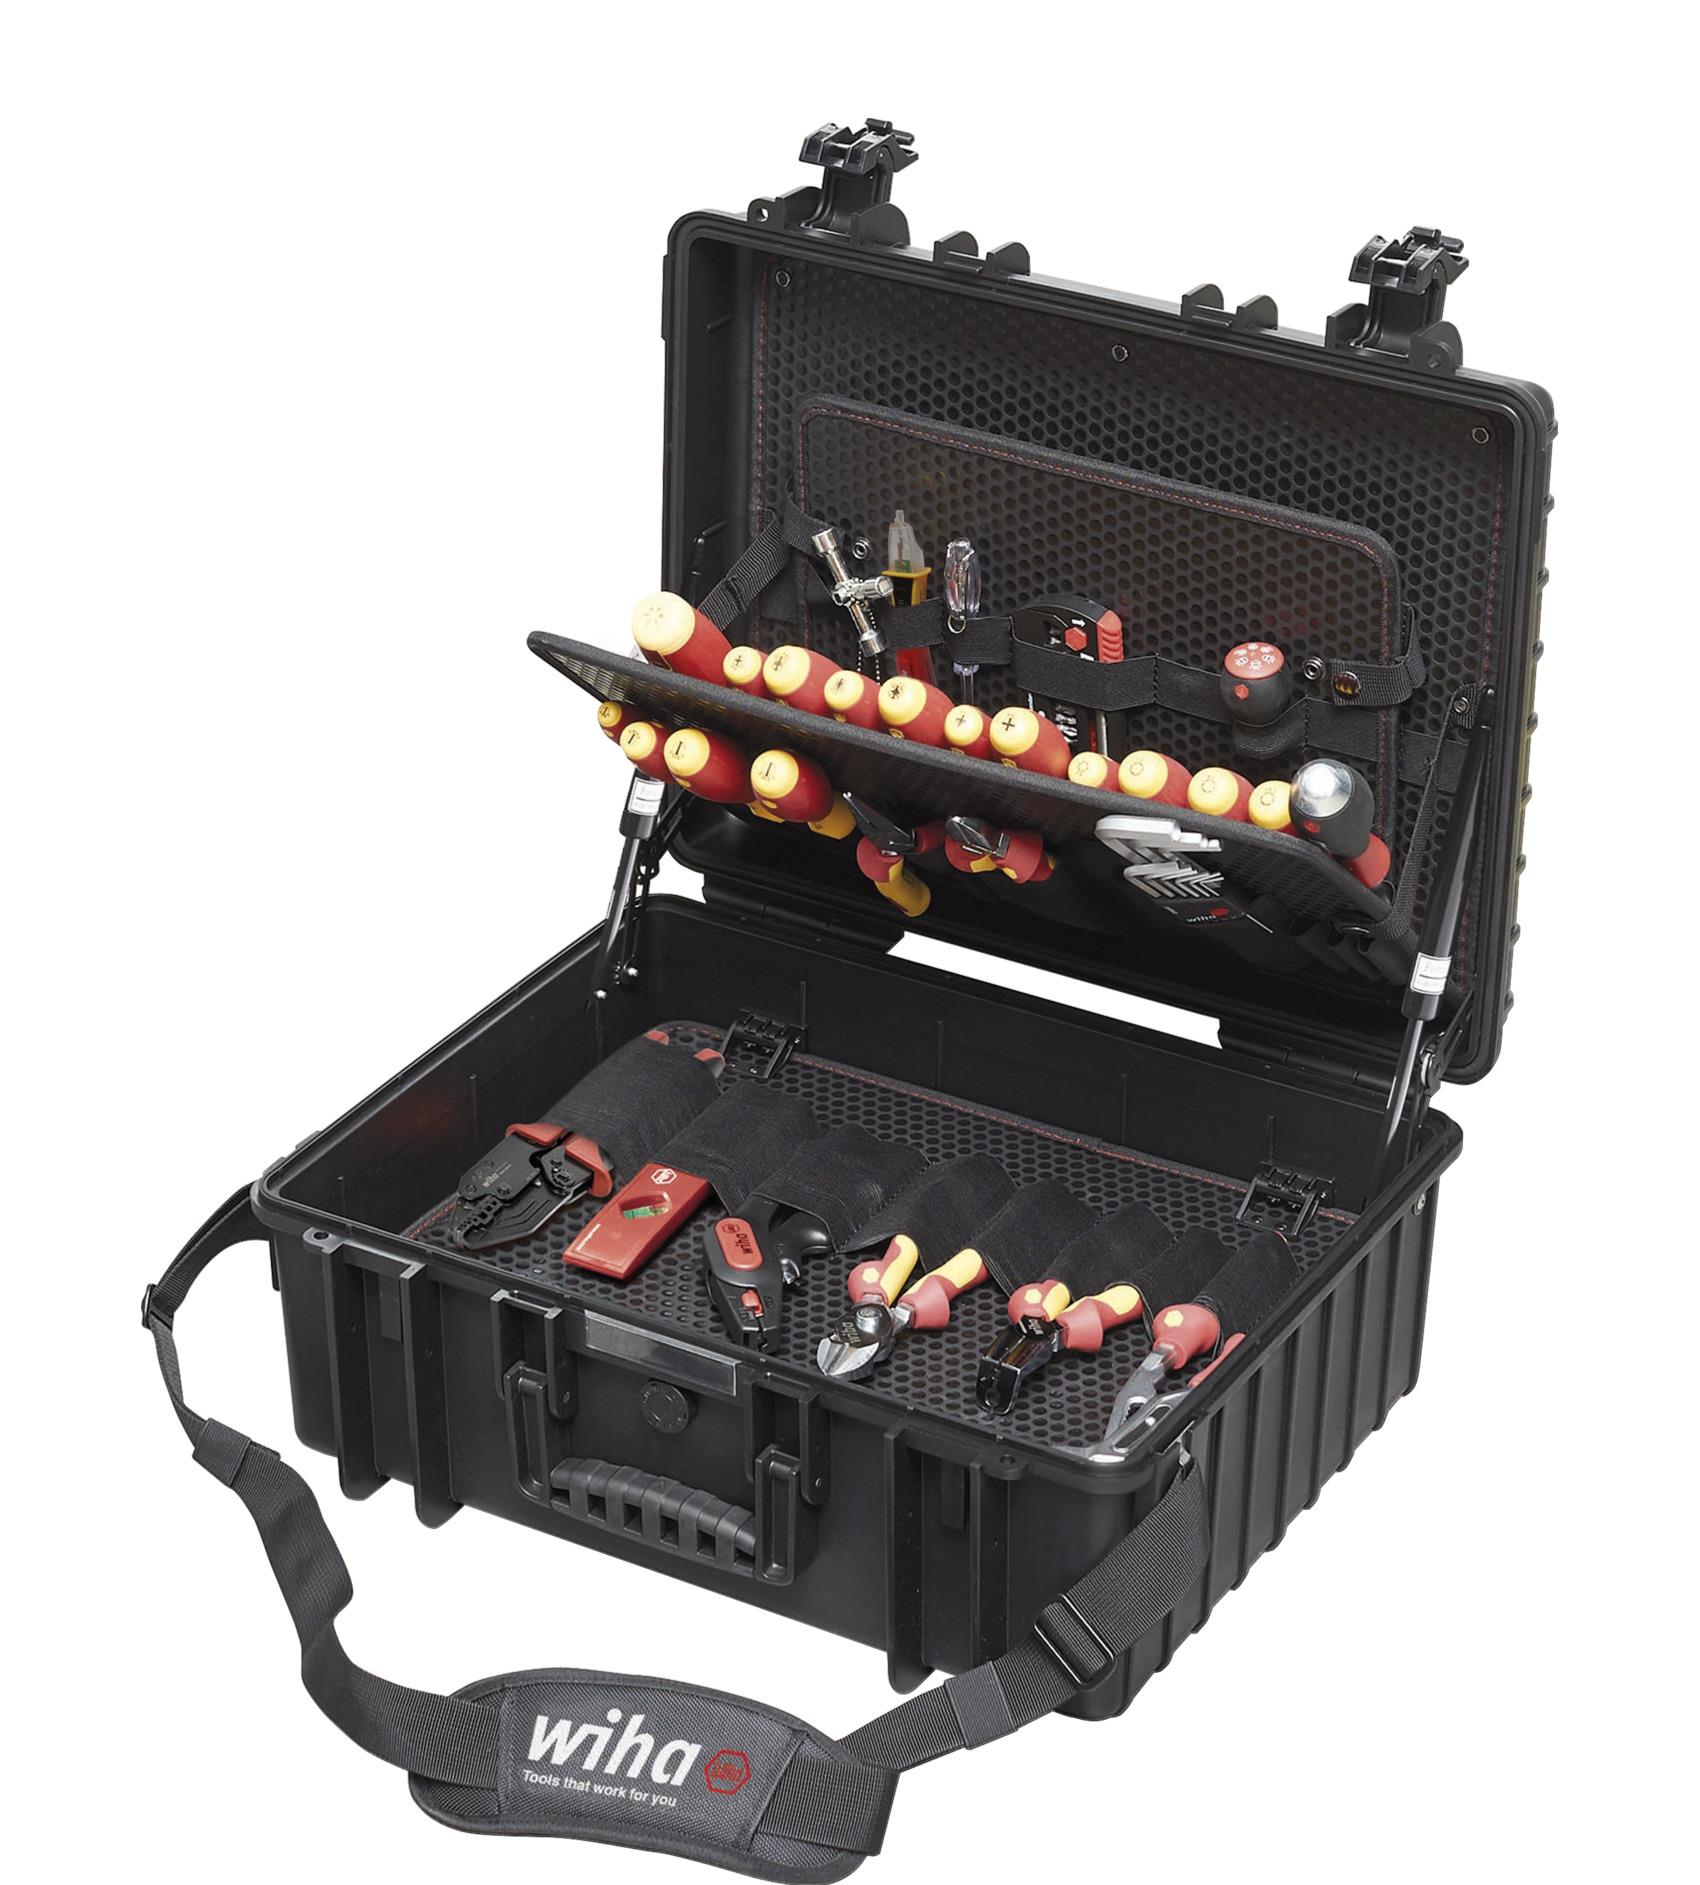 Wiha 9300-702 Tool Kit